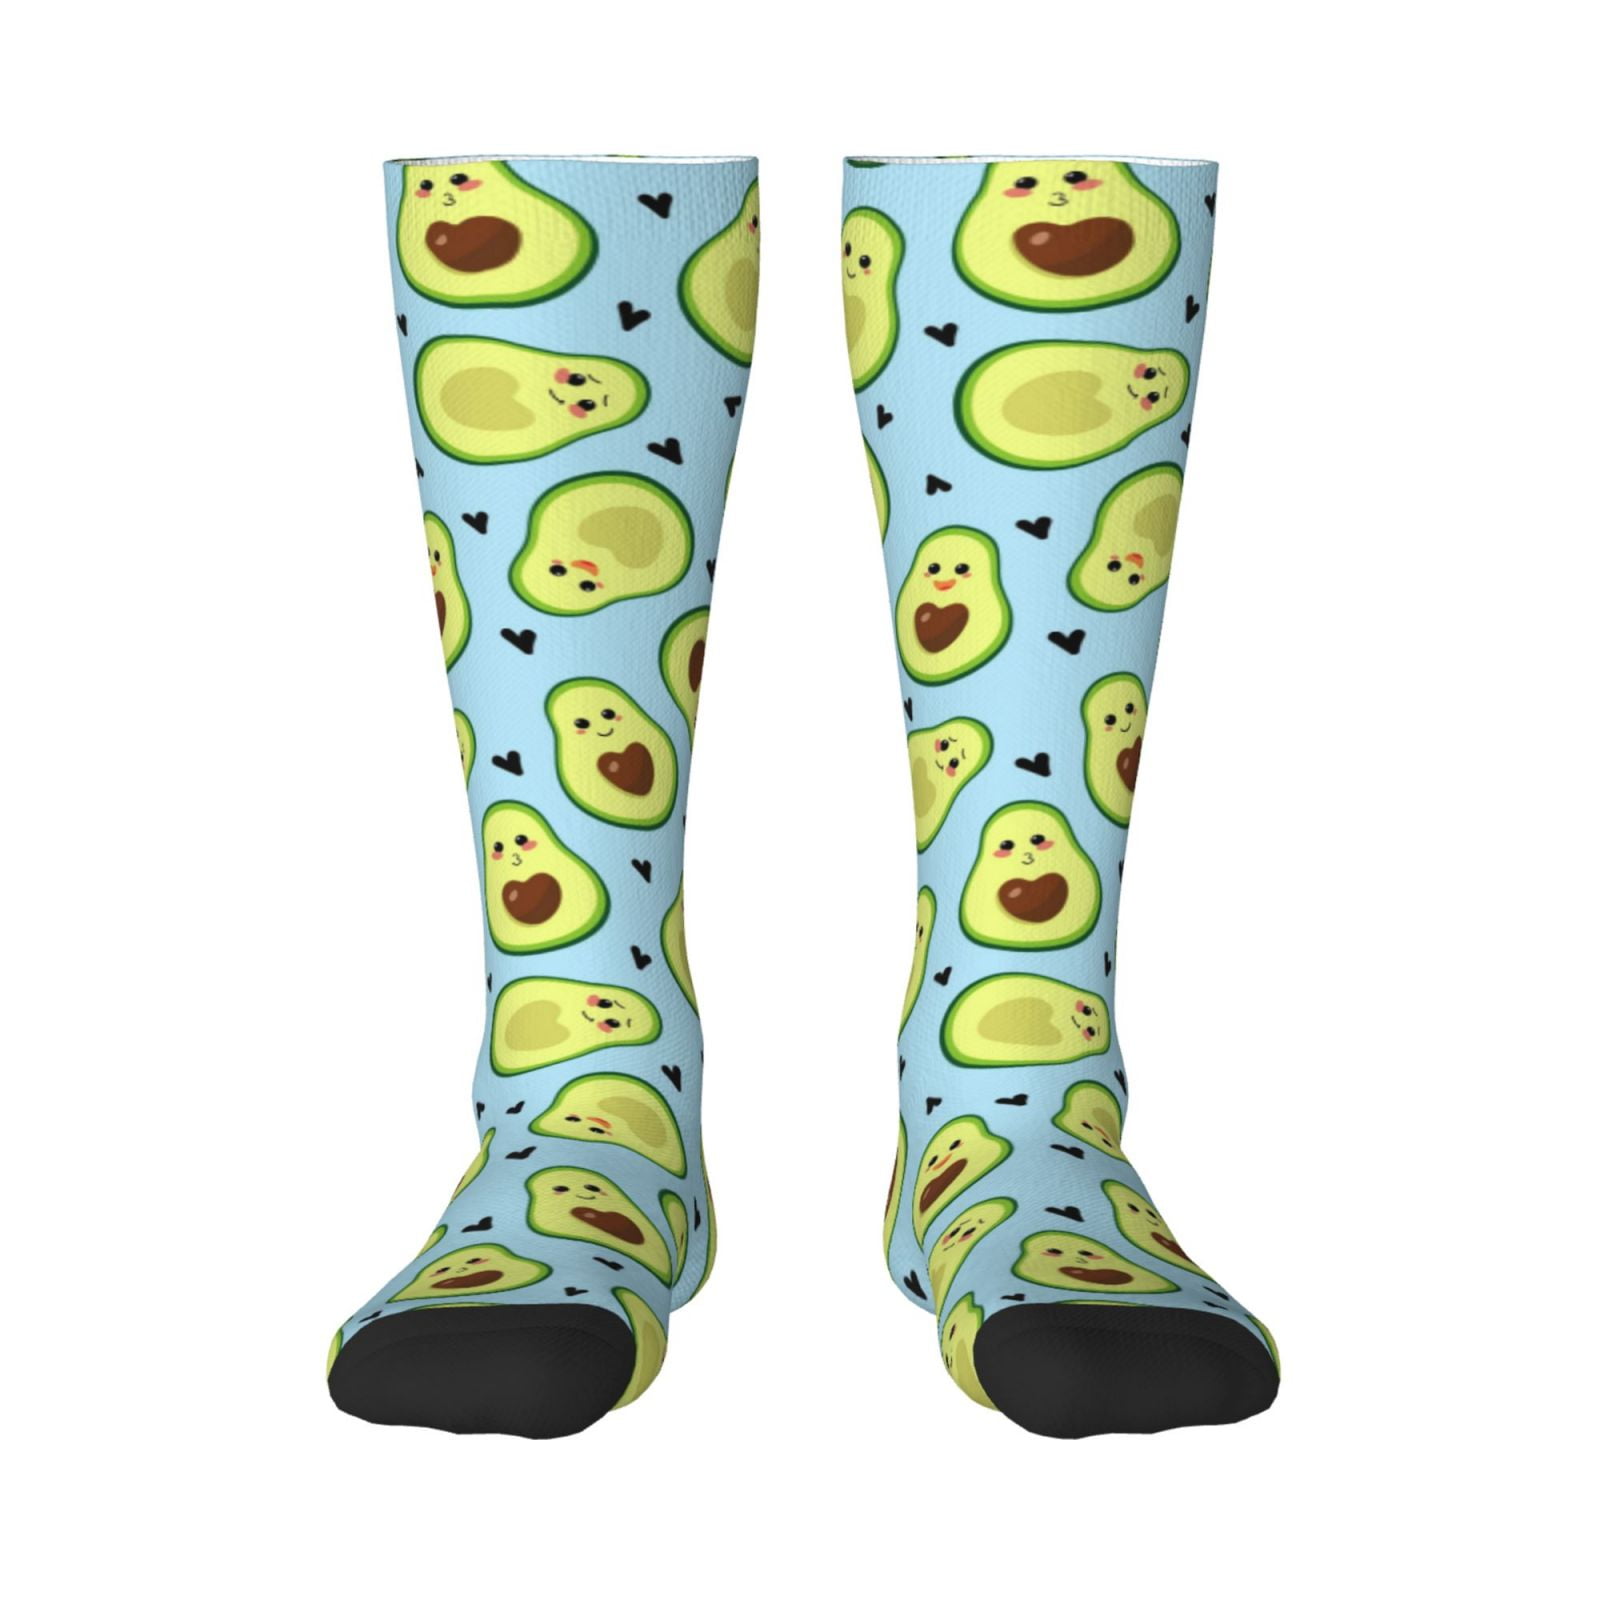 Haiem Avocado and Hearts Socks, Funny Novelty Crazy Design Cotton Socks ...